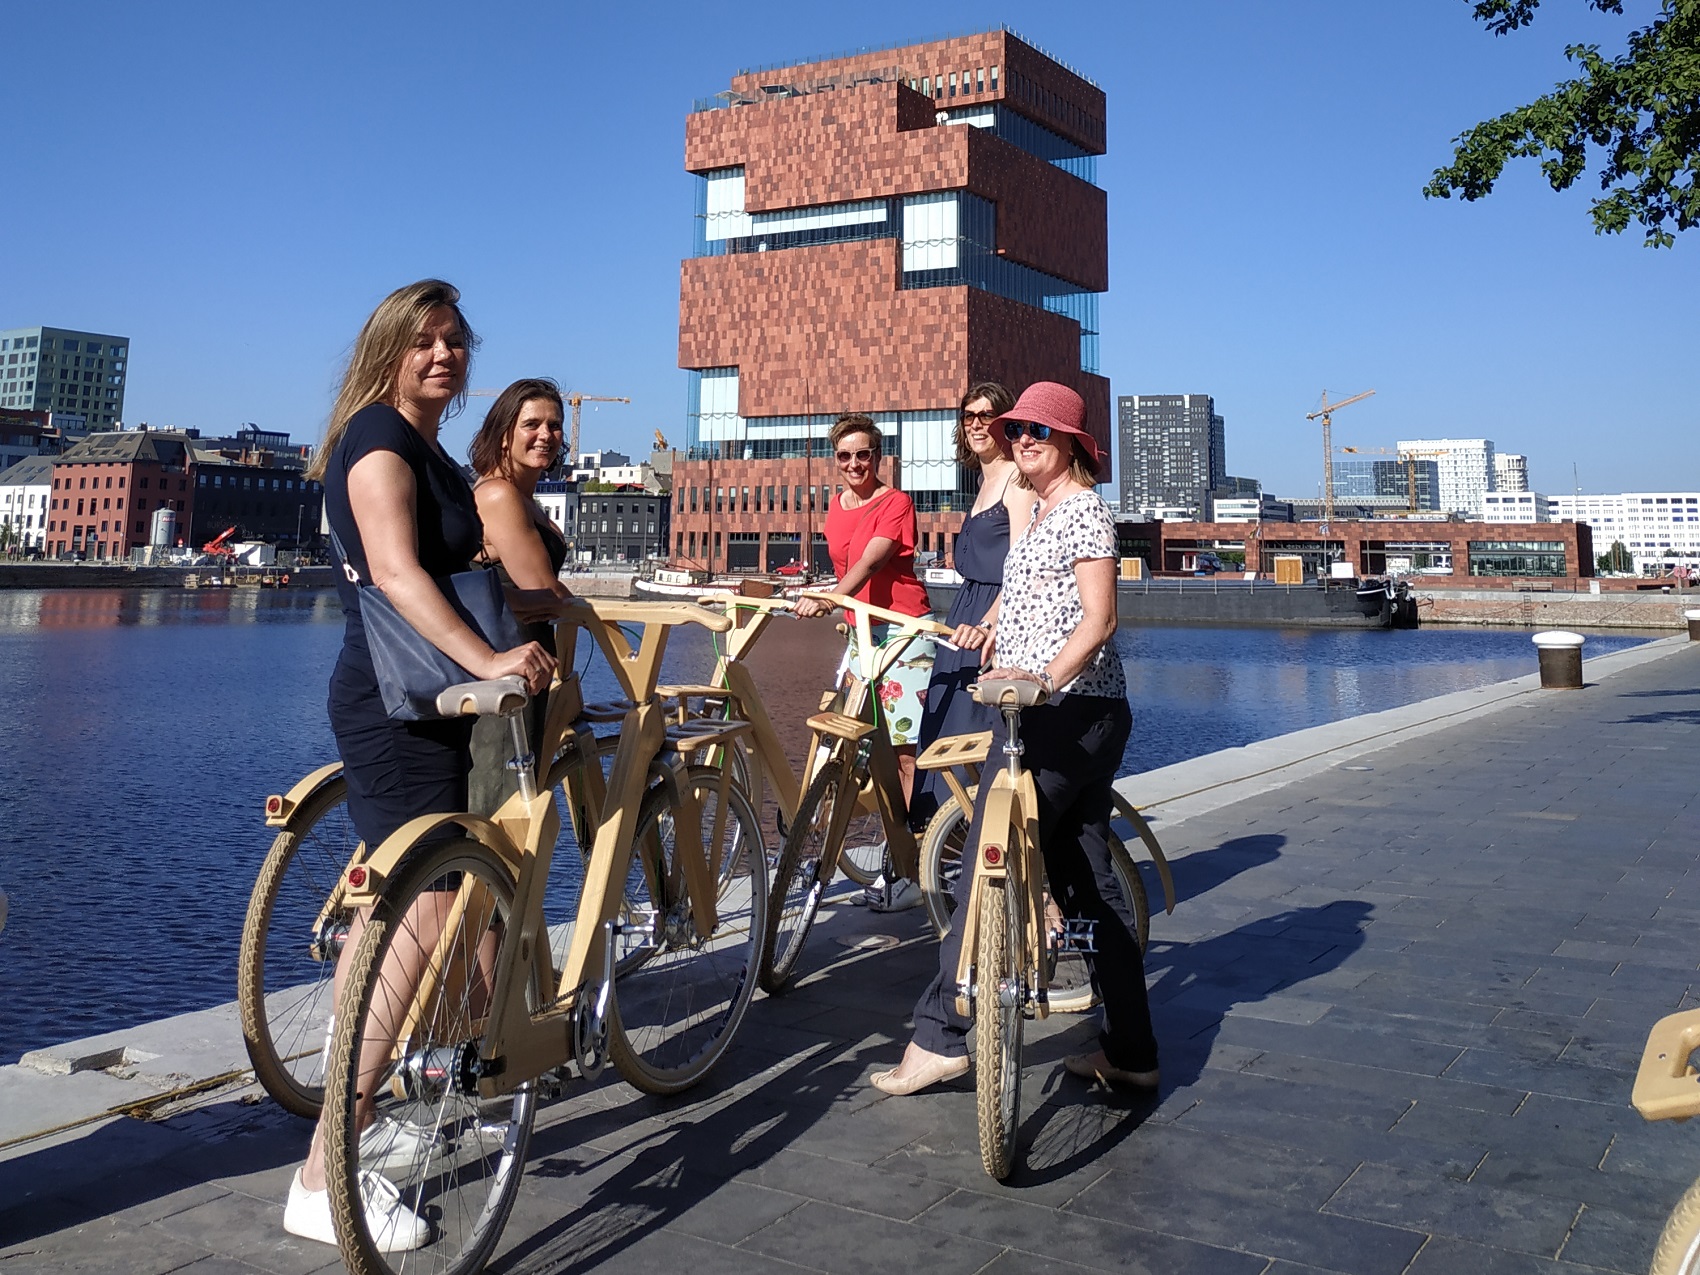 Antwerp Eco tour on wooden bikes